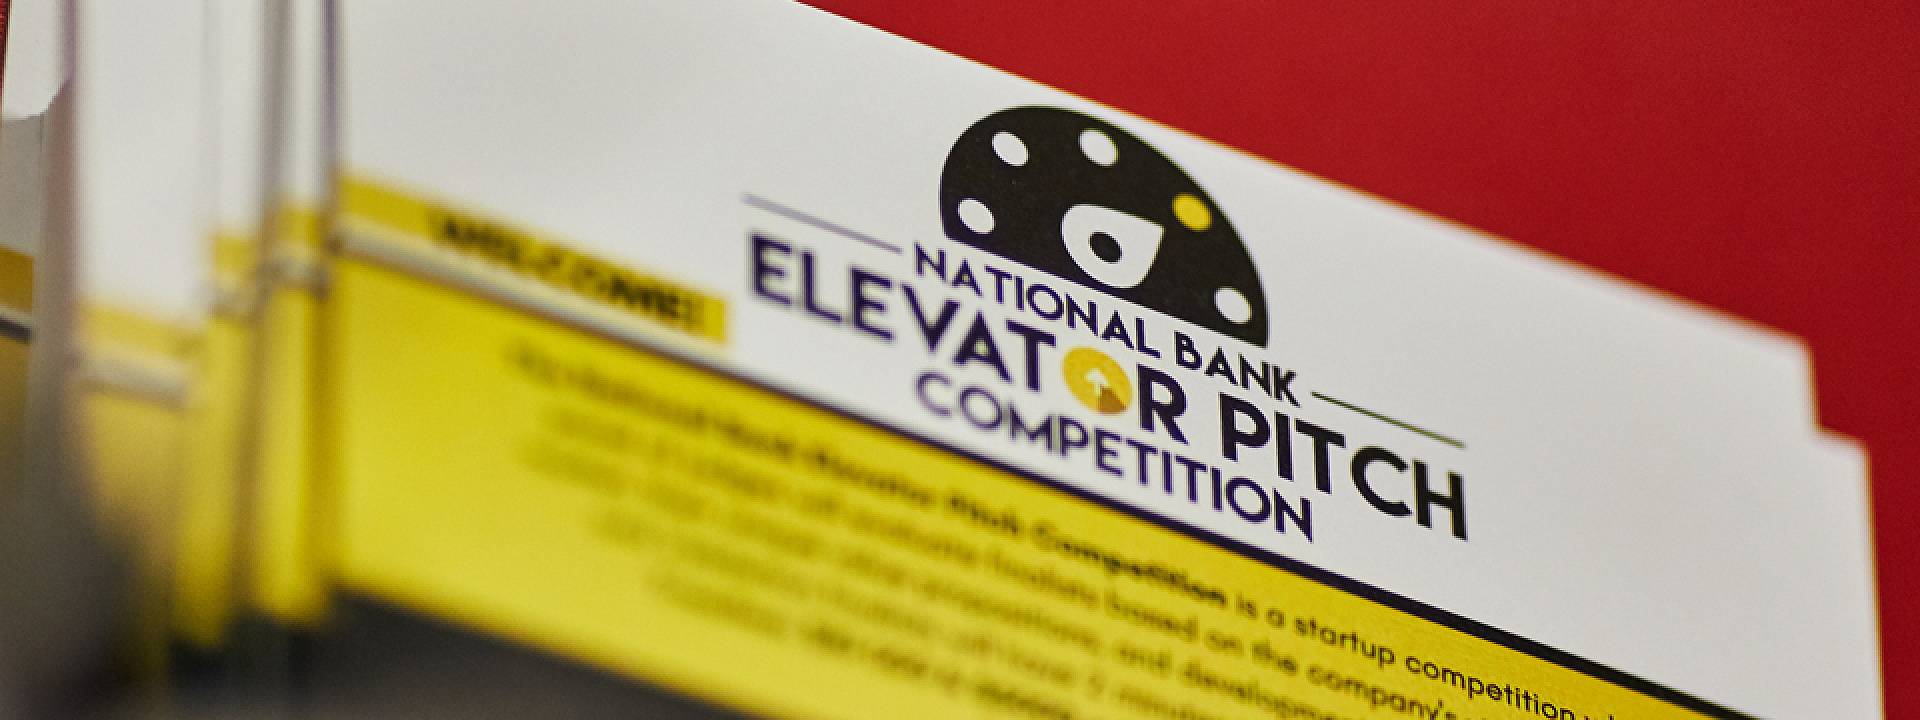 Compétition « Elevator Pitch » présentée par la Banque Nationale